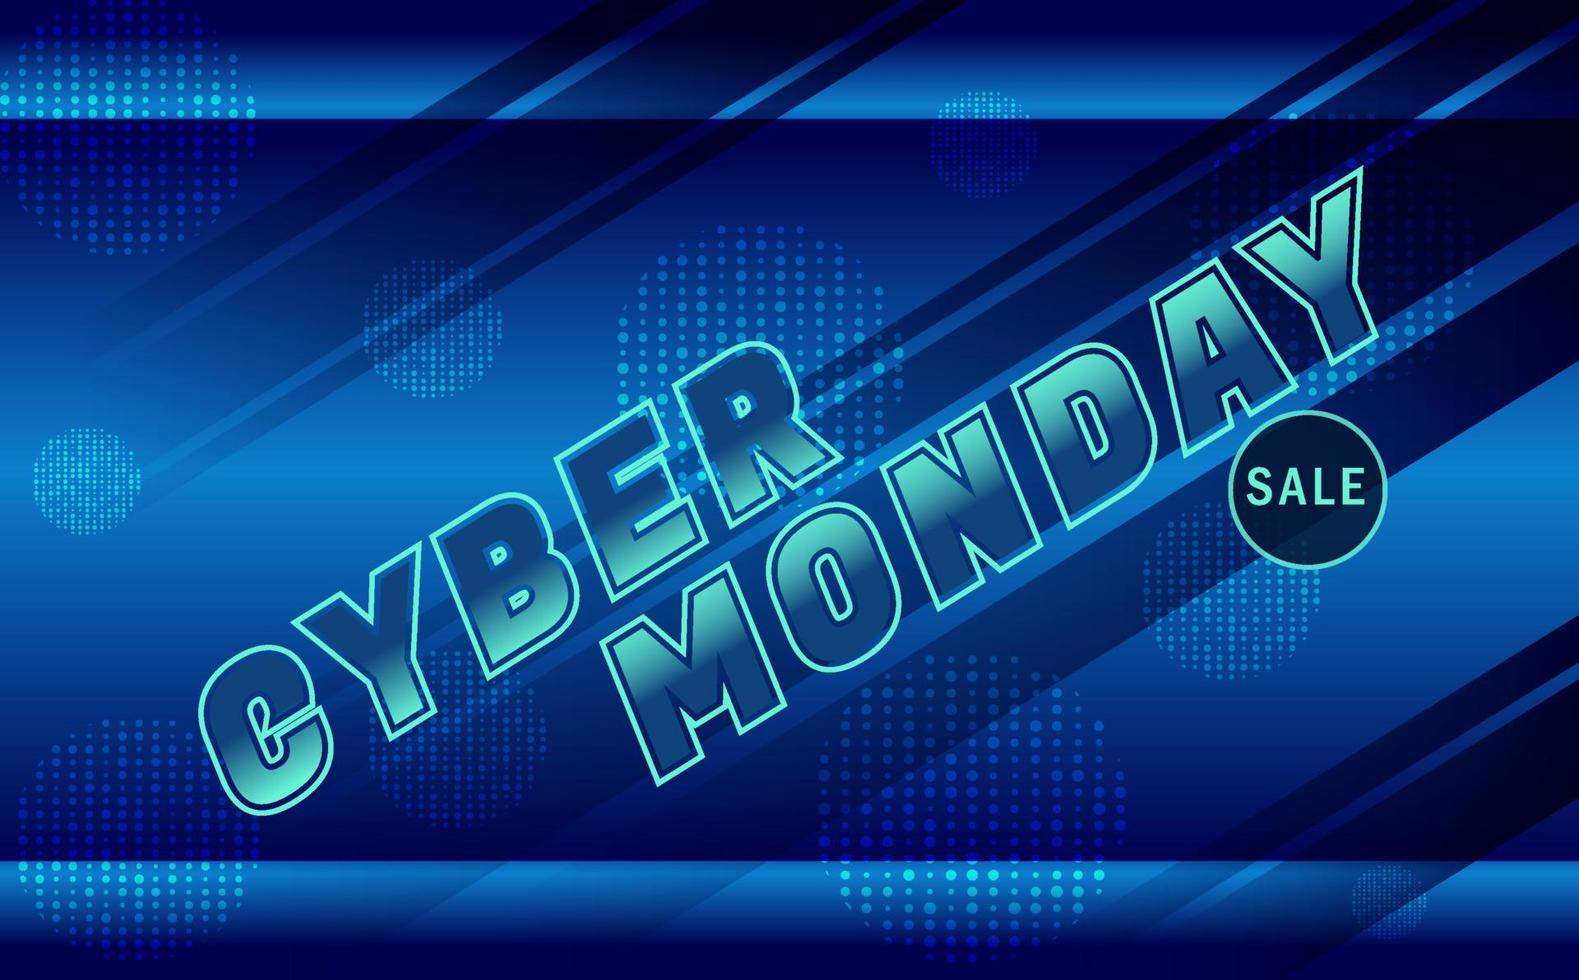 banner de venda cyber segunda-feira, com ilustração de fundo abstrato azul vetor